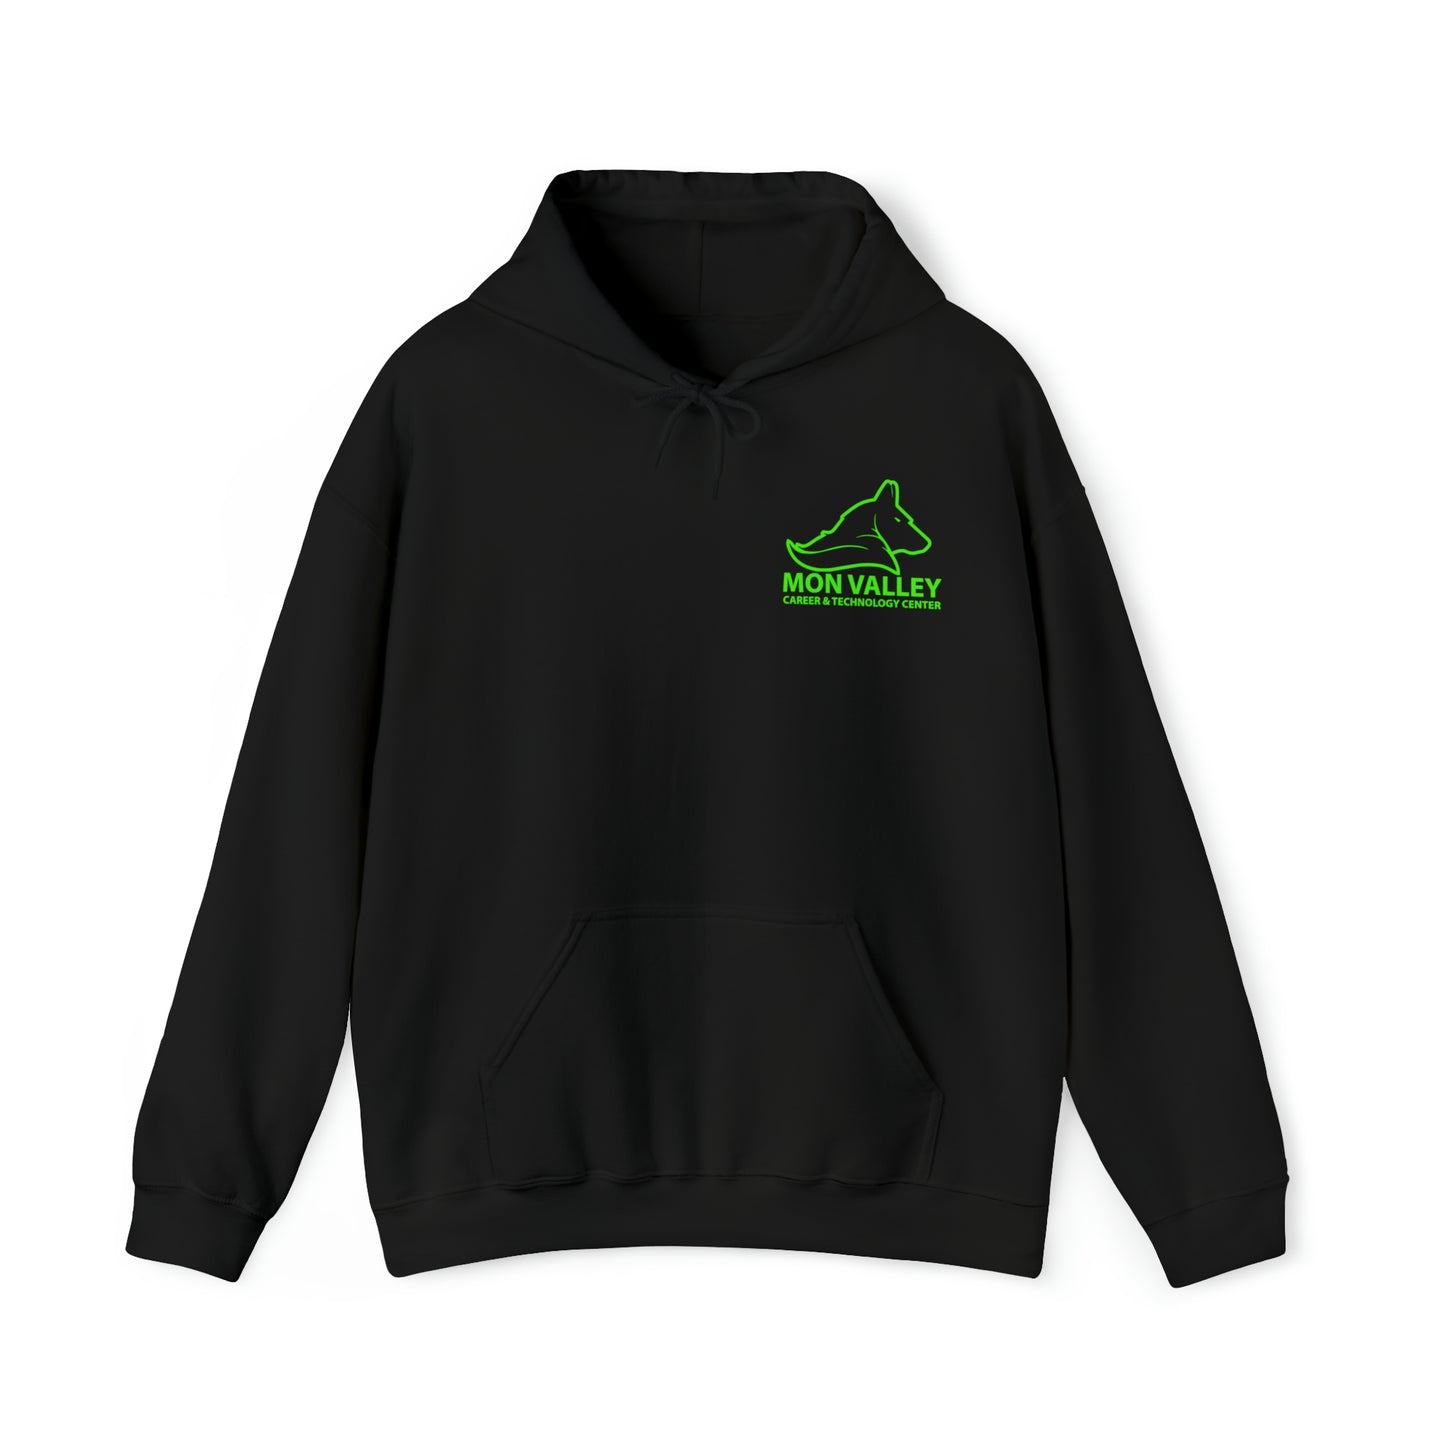 MVCTC- Computer Hooded Sweatshirt